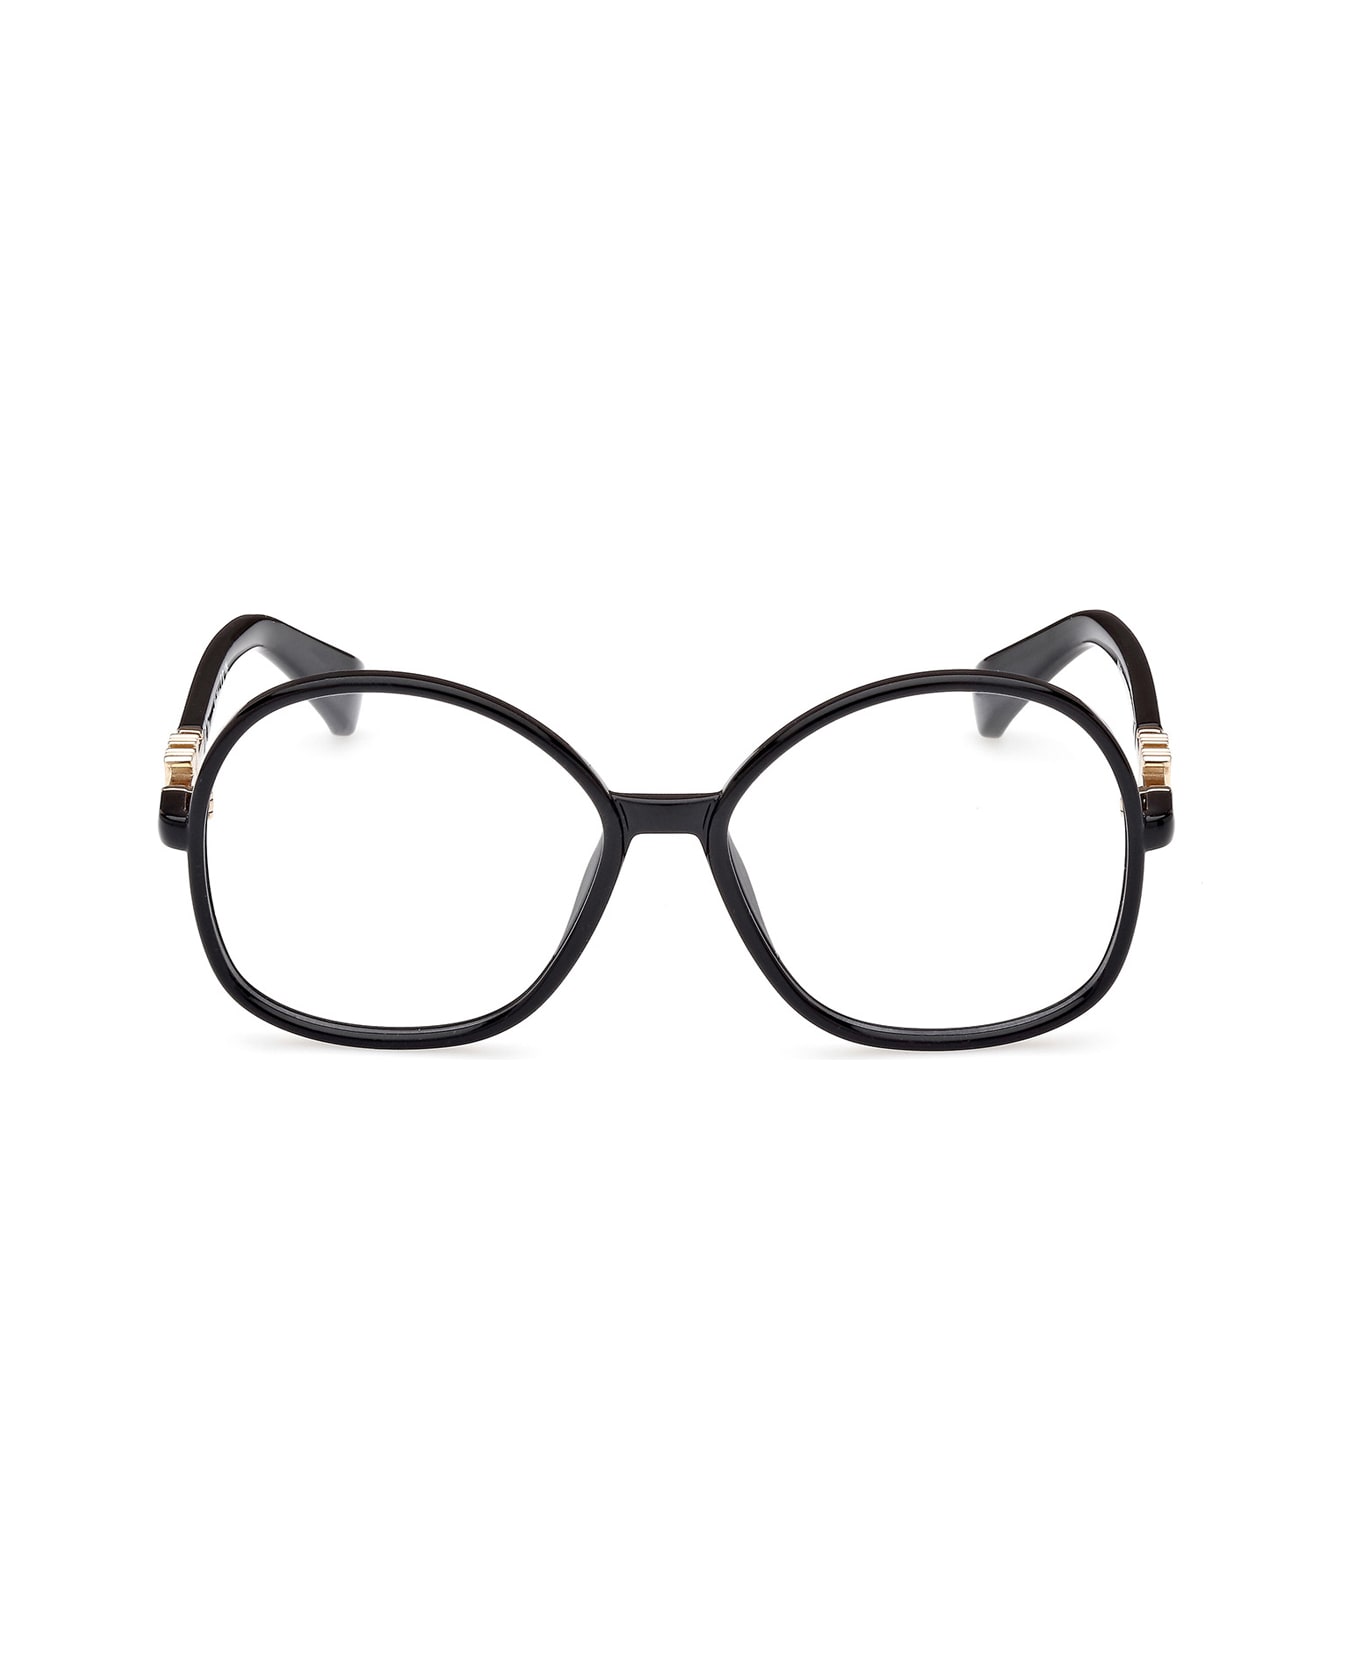 Max Mara Mm5100 001 Glasses - Nero